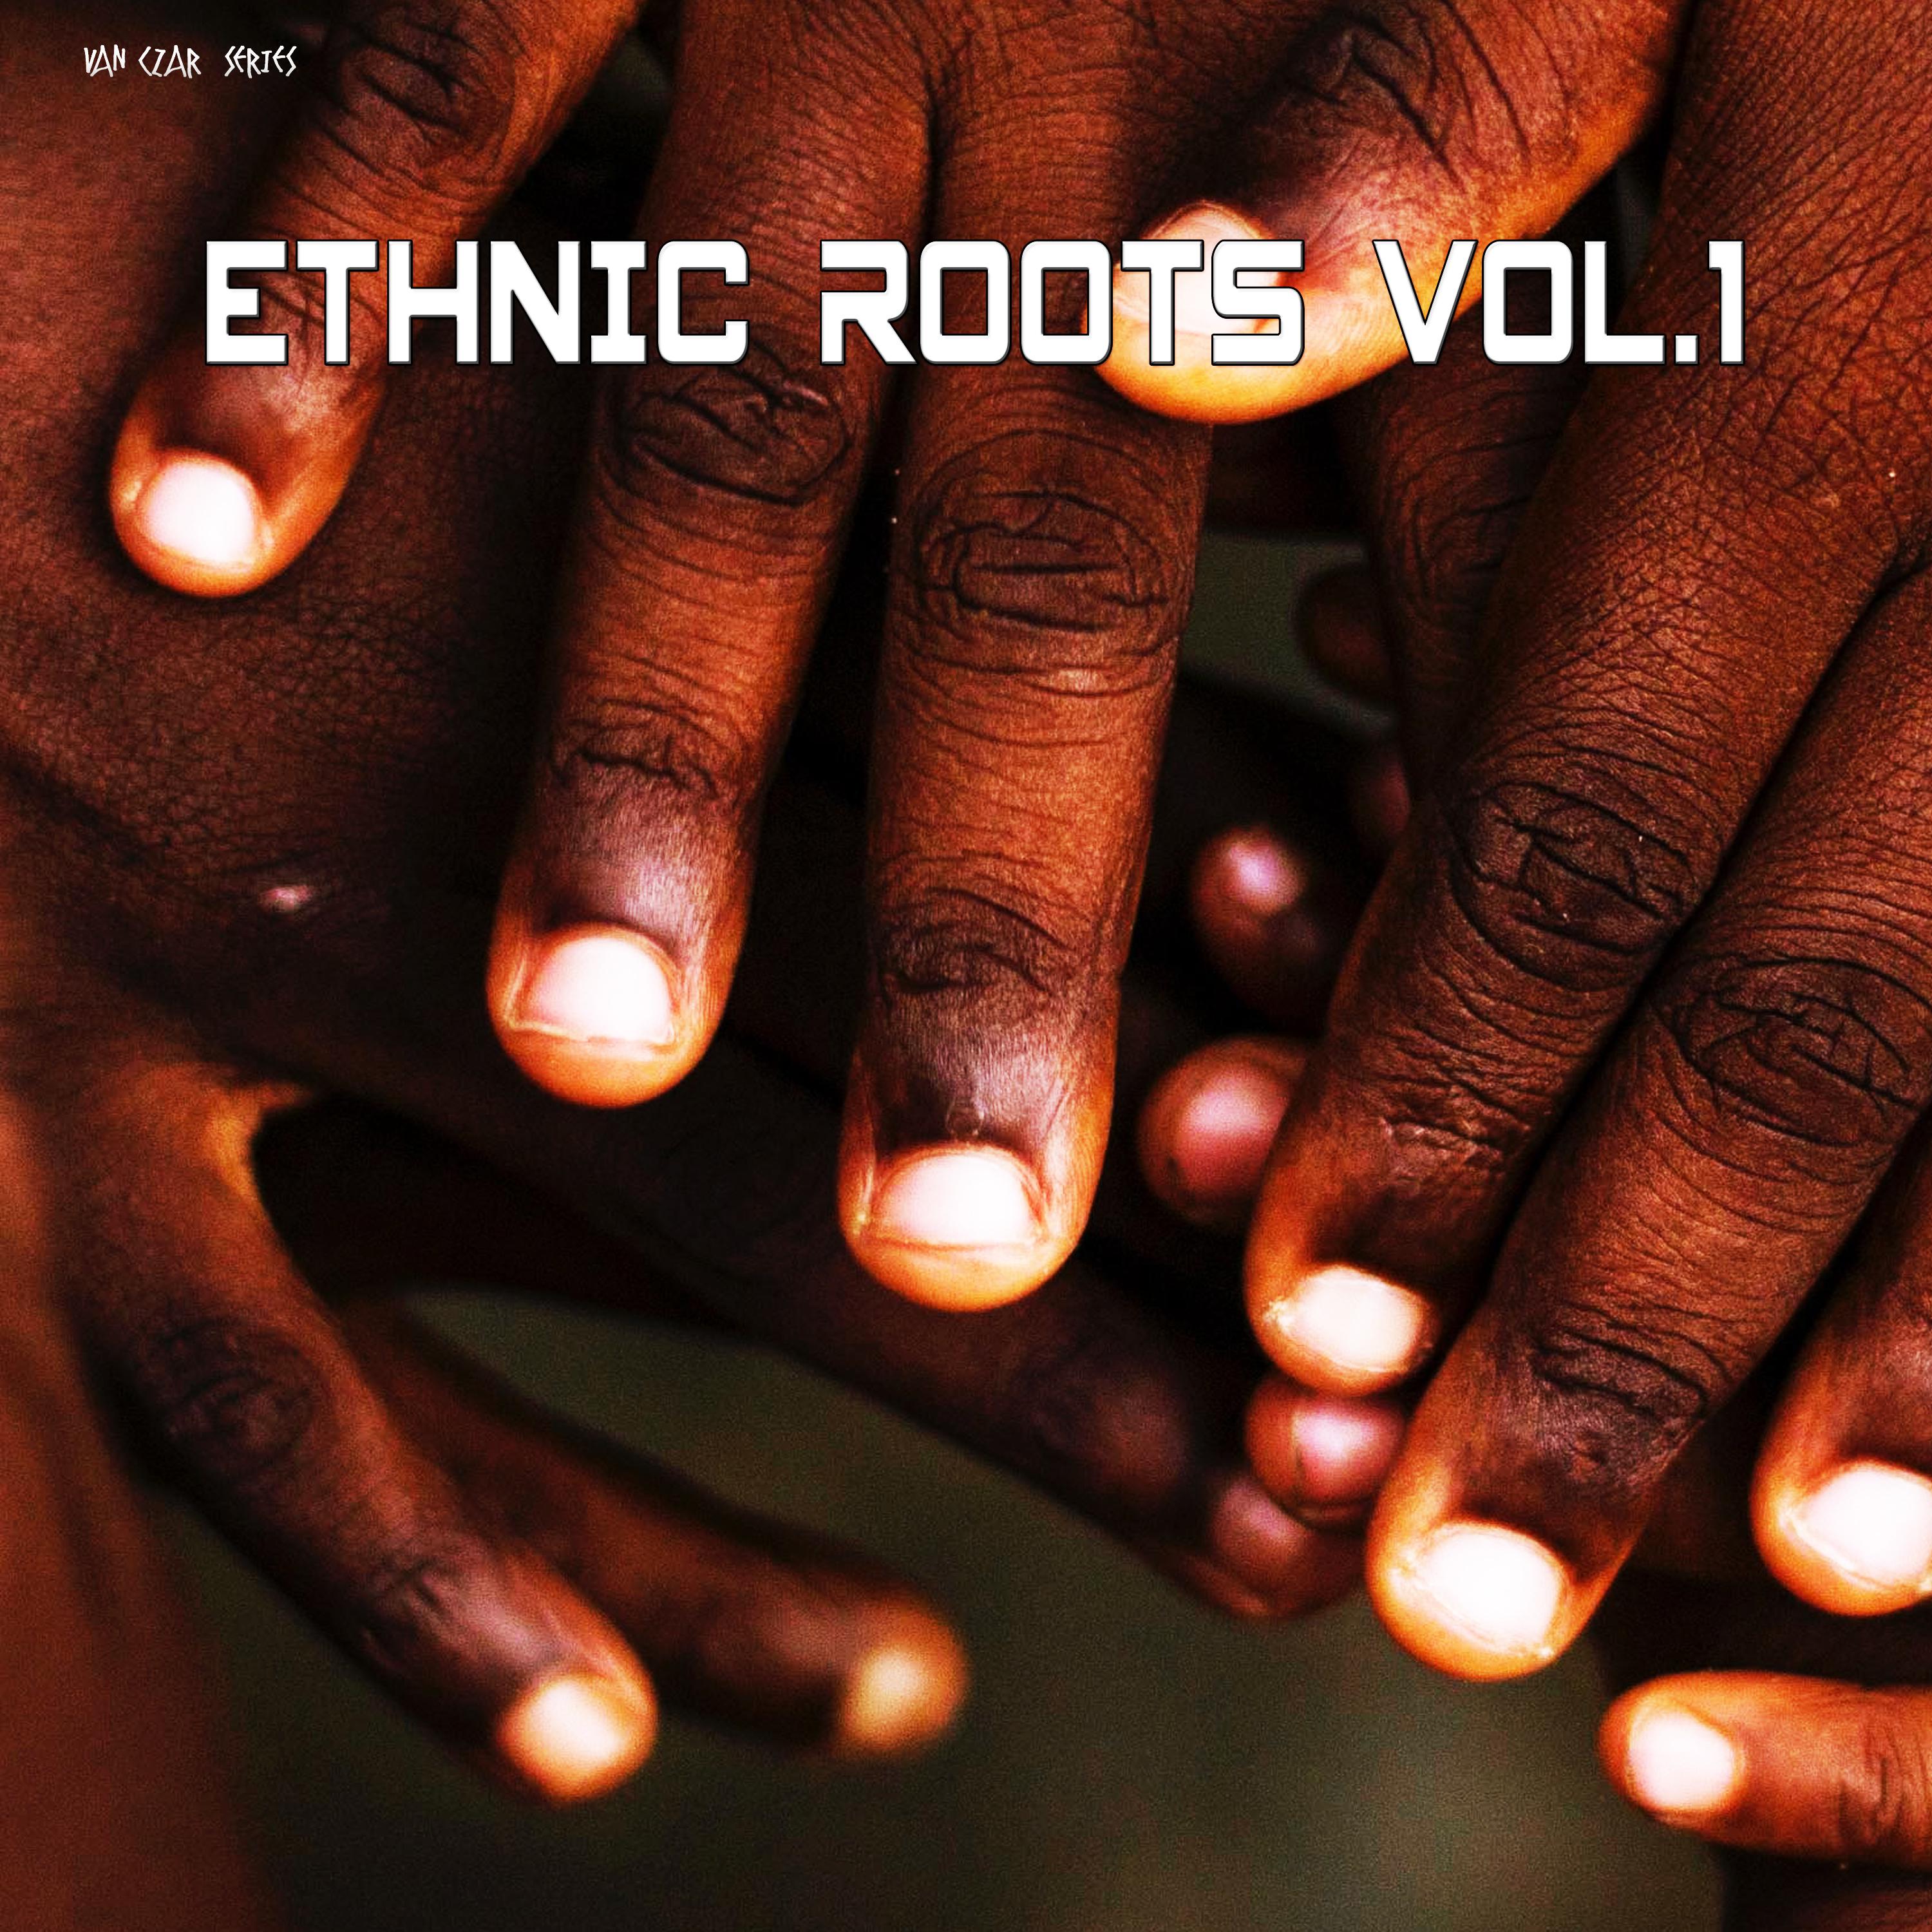 Ethnic Roots. Vol. 1 (Mixed By Van Czar) [Continuous DJ Mix]